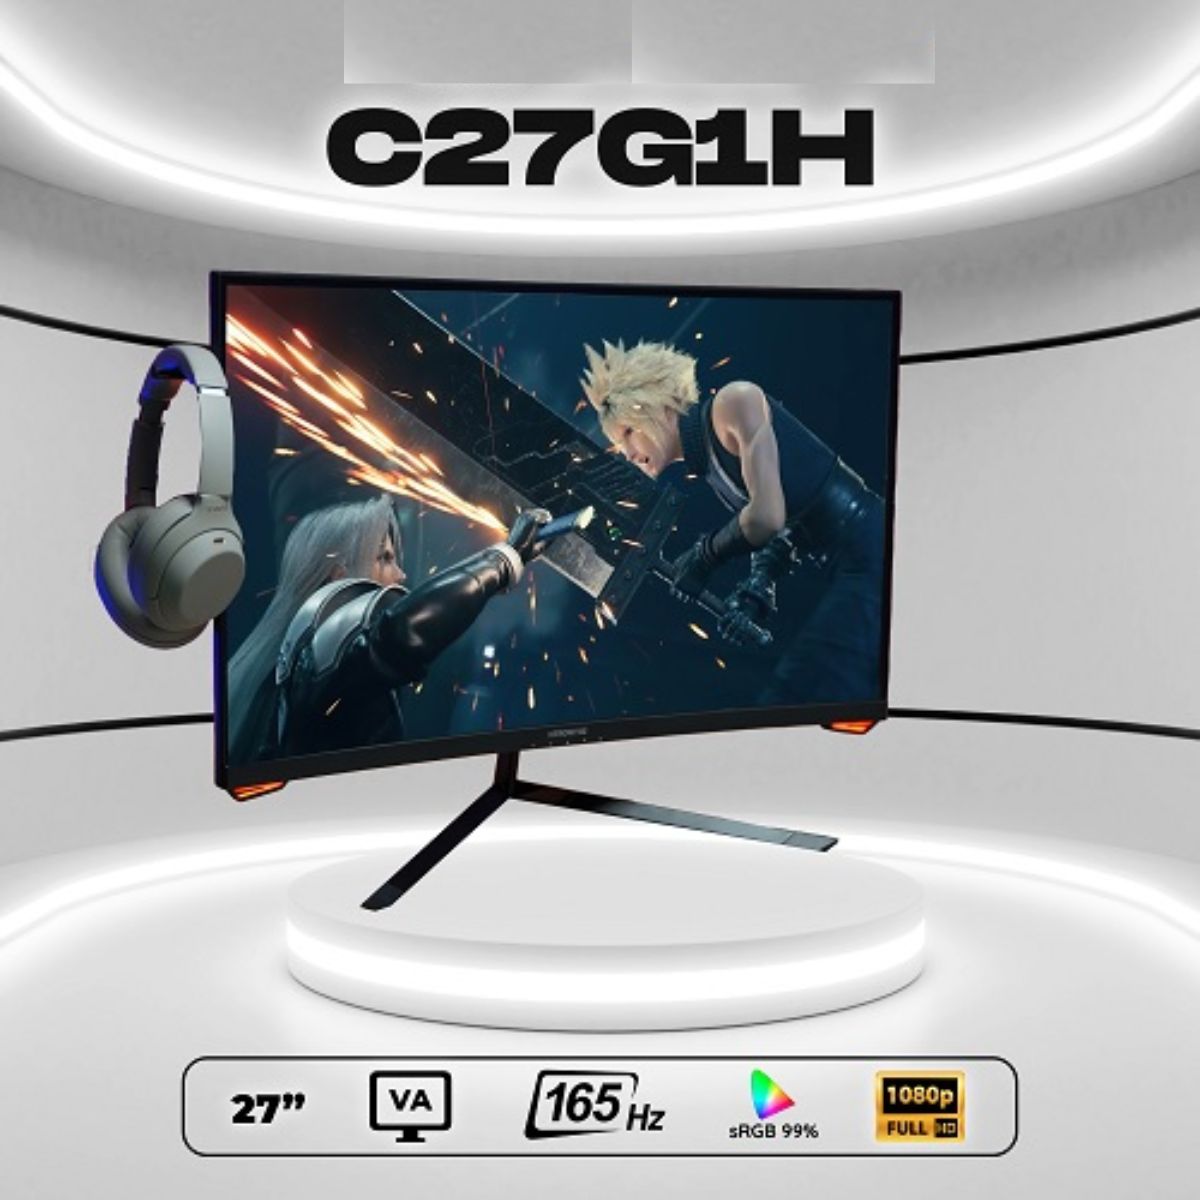 Màn hình gaming cong 27inch Full HD Skyworth C27G1H tần số quét 165Hz, đèn nền E-LED, độ sáng 300nit